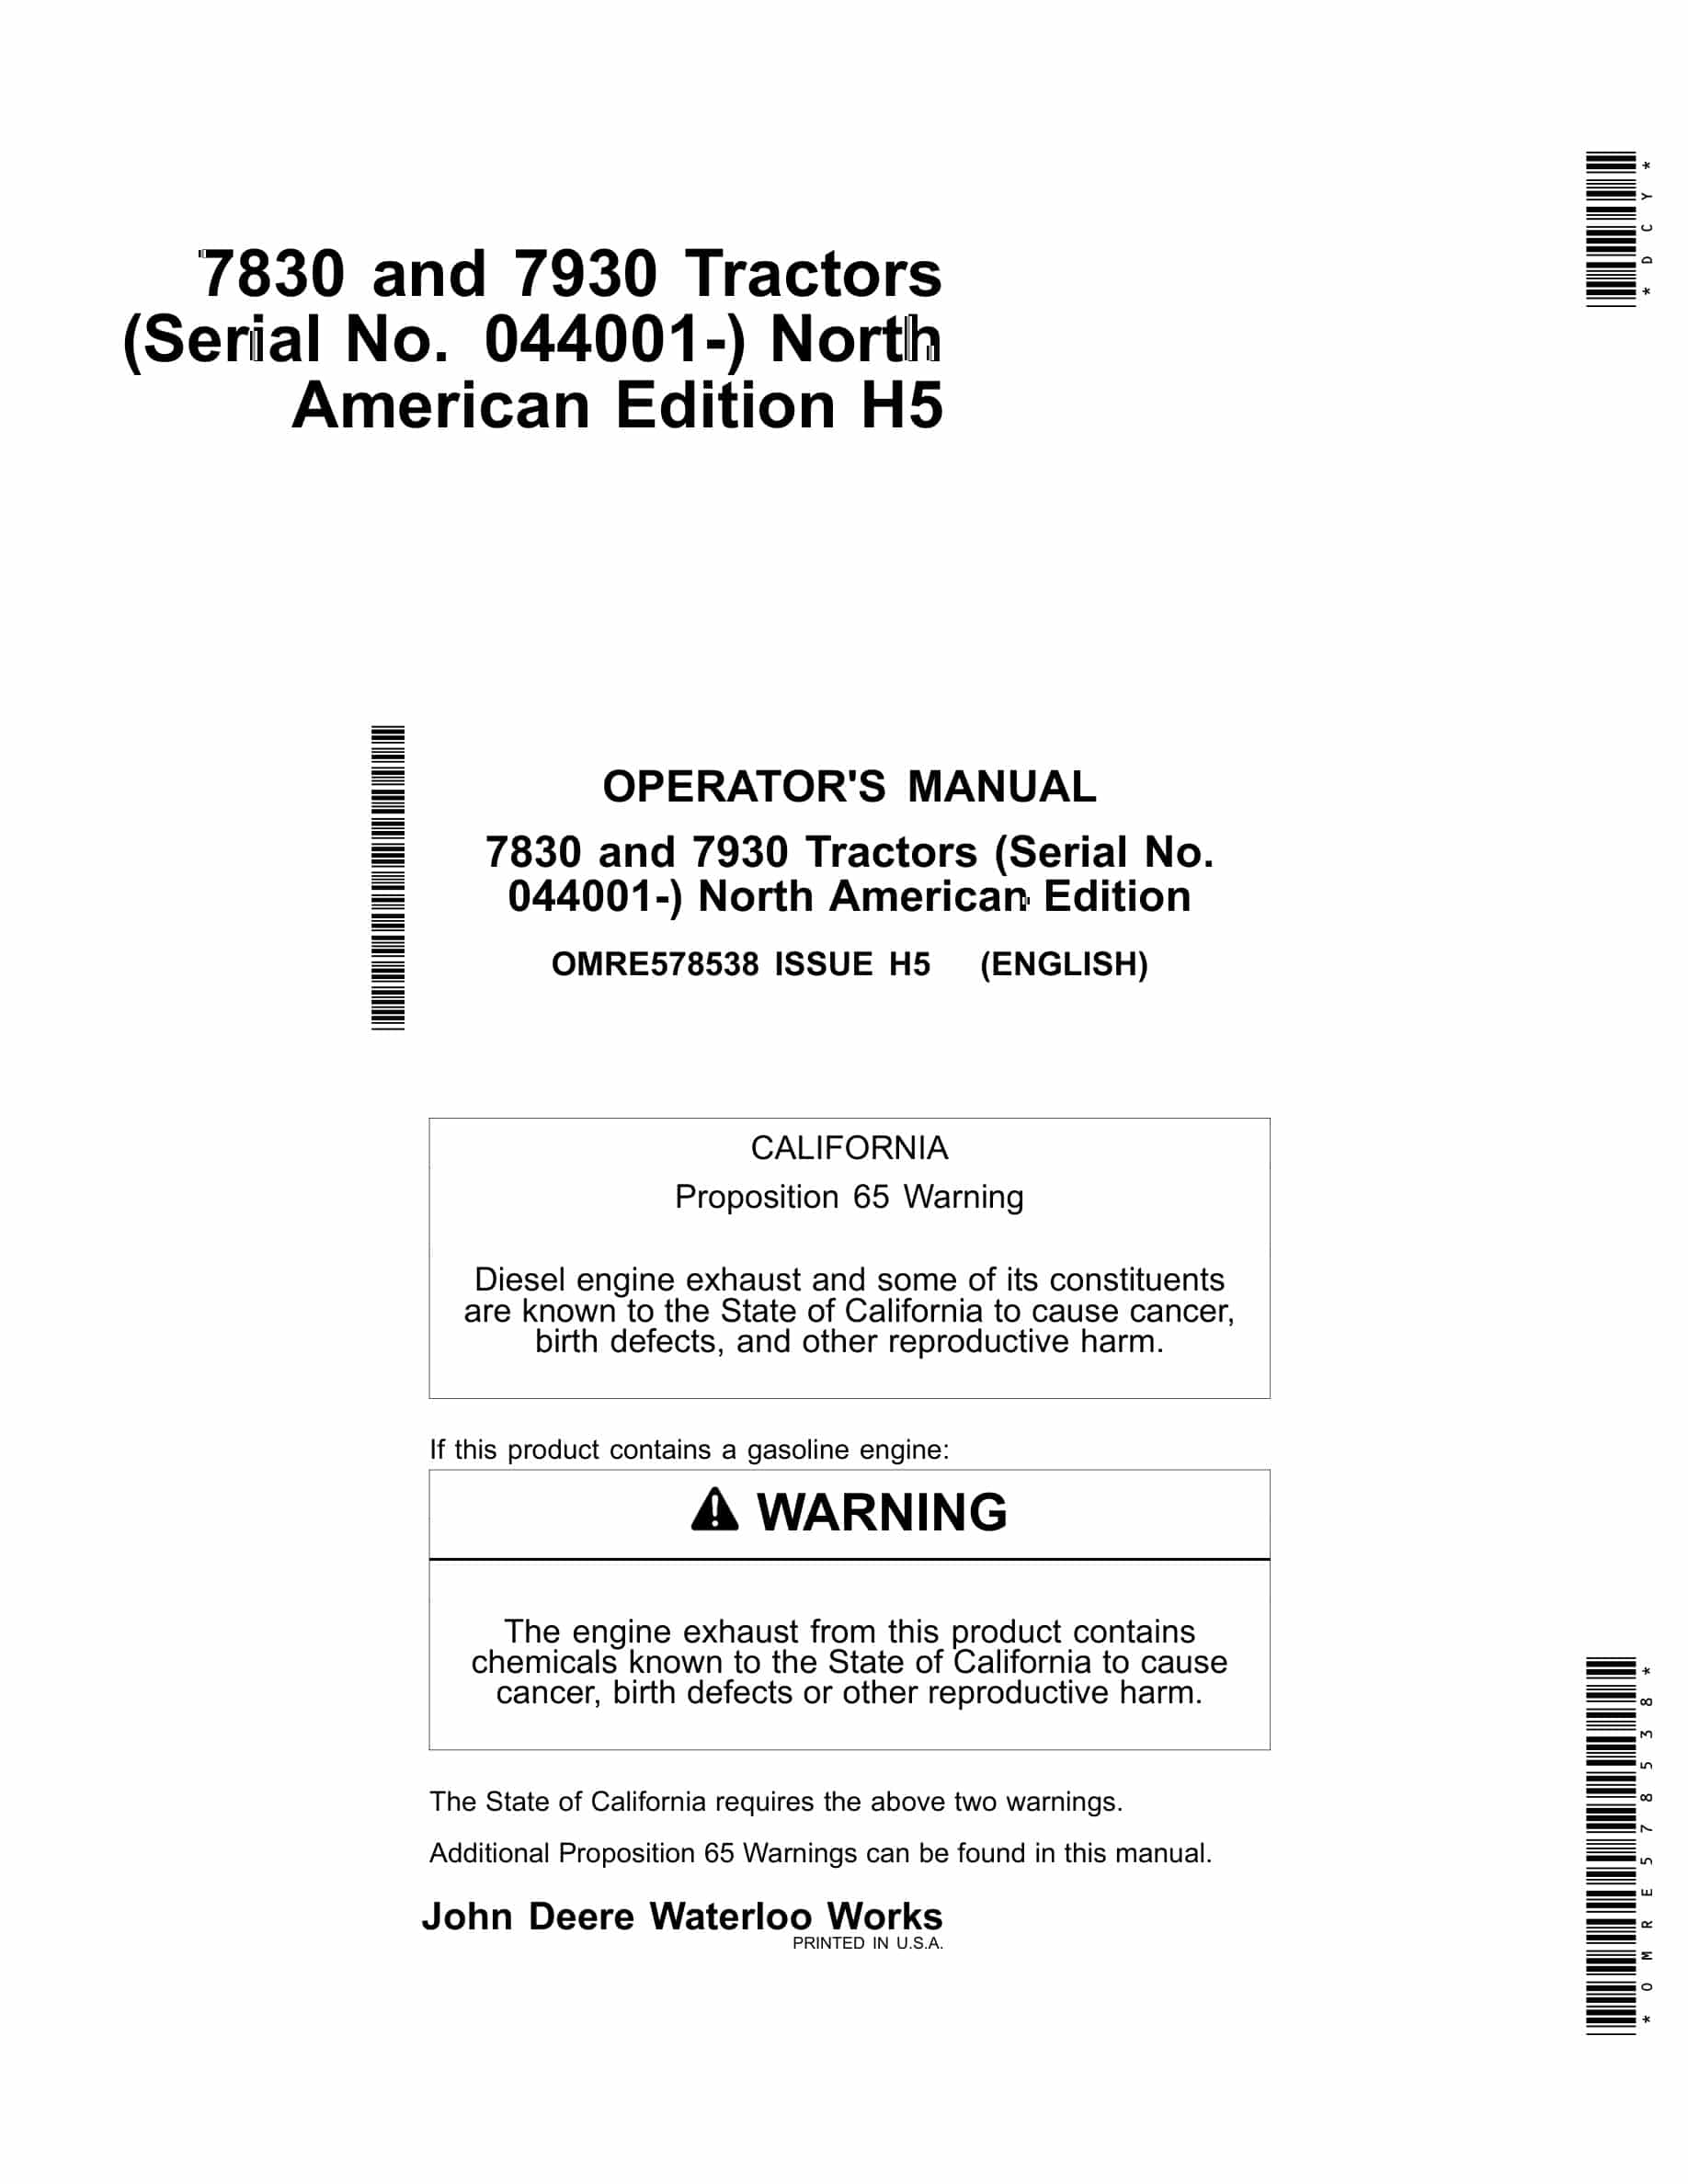 John Deere 7830 and 7930 Tractor Operator Manual OMRE578538-1